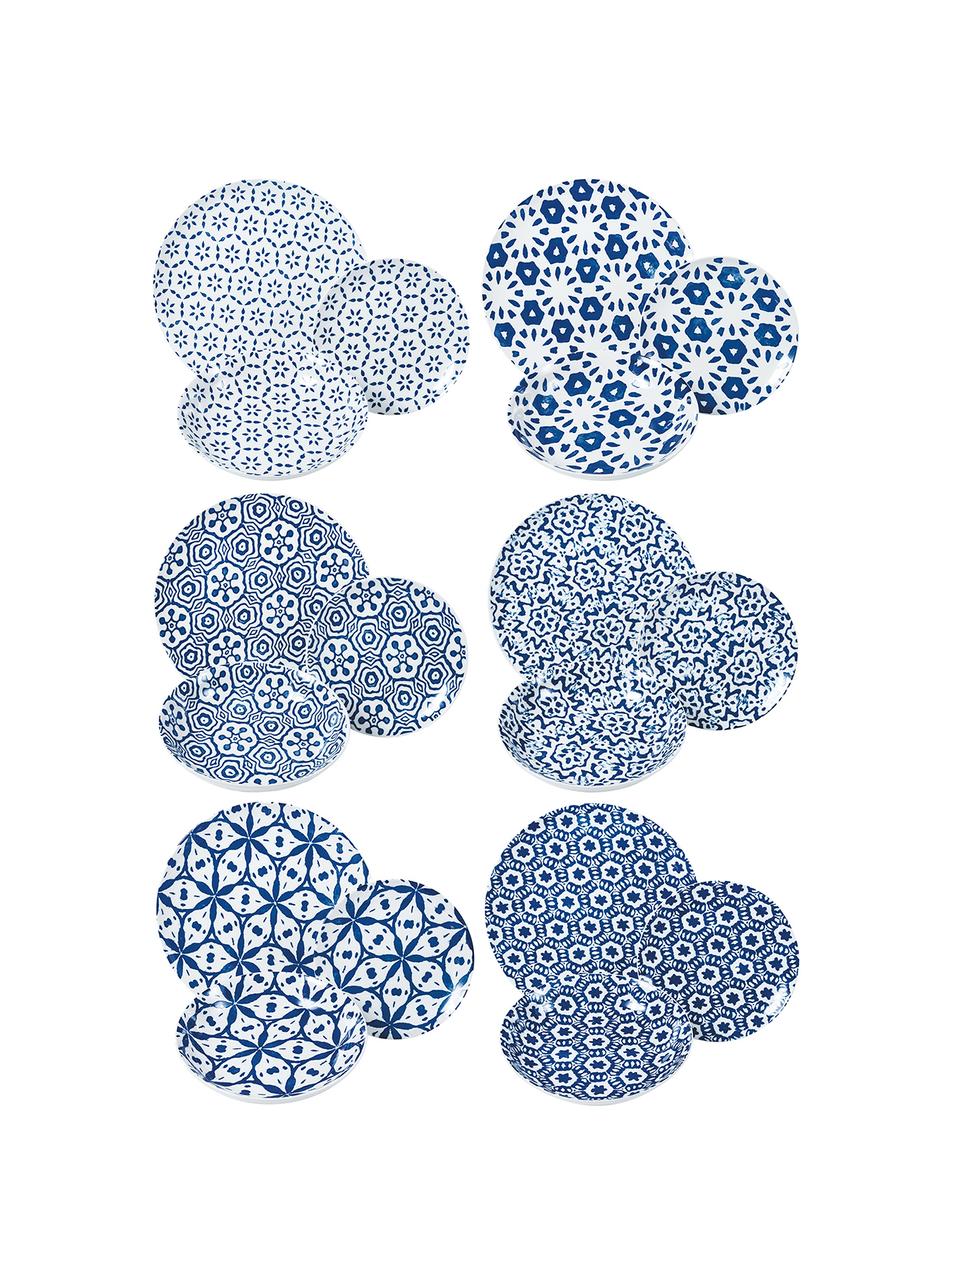 Gemustertes Geschirr-Set Bodrum in Blau/Weiß, 6 Personen (18-tlg.), Porzellan, Blau, Weiß, Set mit verschiedenen Größen